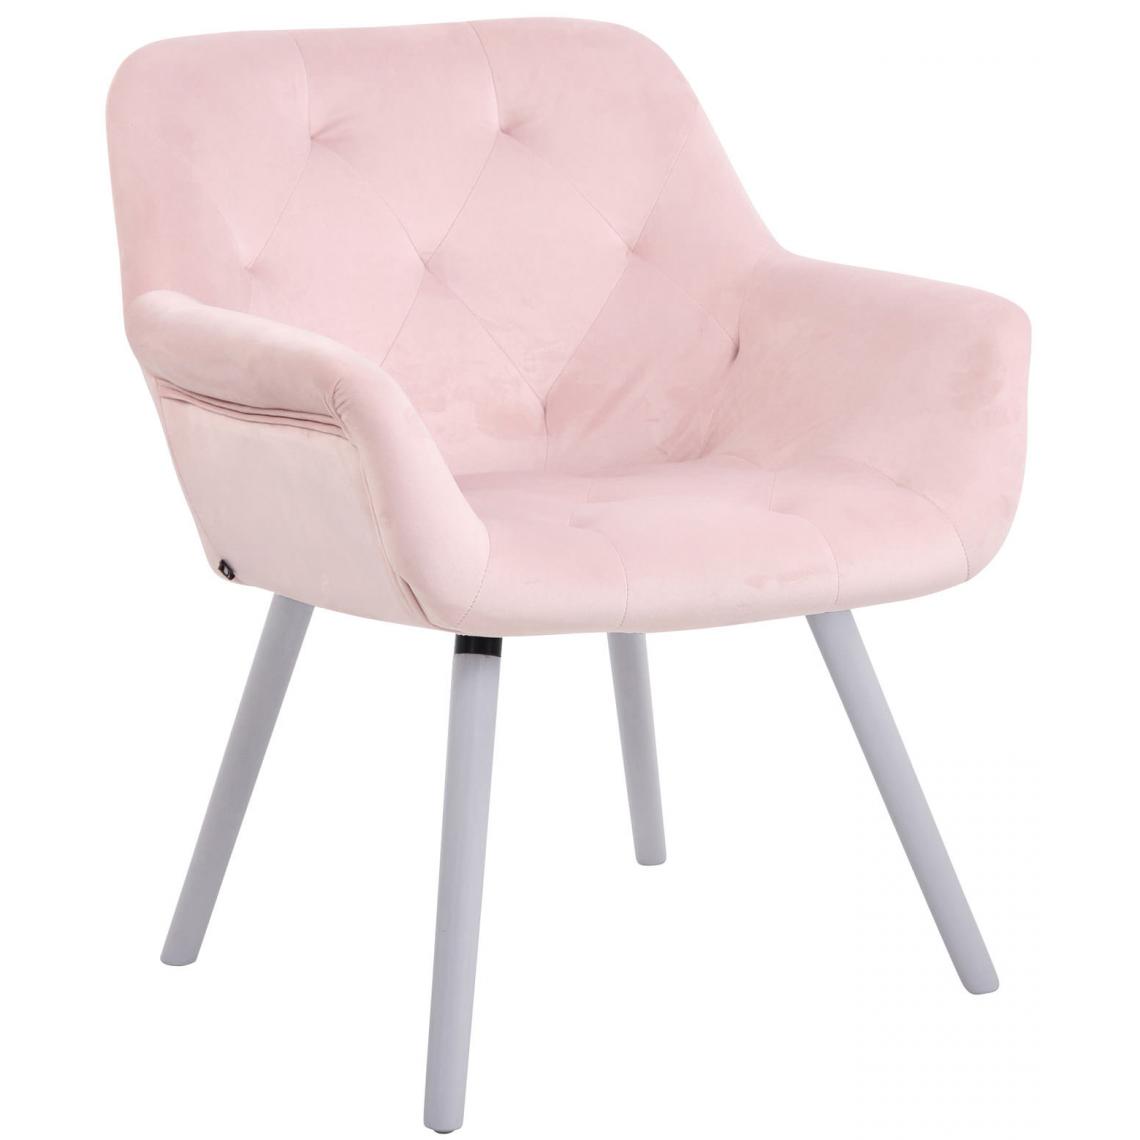 Icaverne - Contemporain Chaise de salle à manger reference Khartoum velours blanc (chêne) couleur rose - Chaises